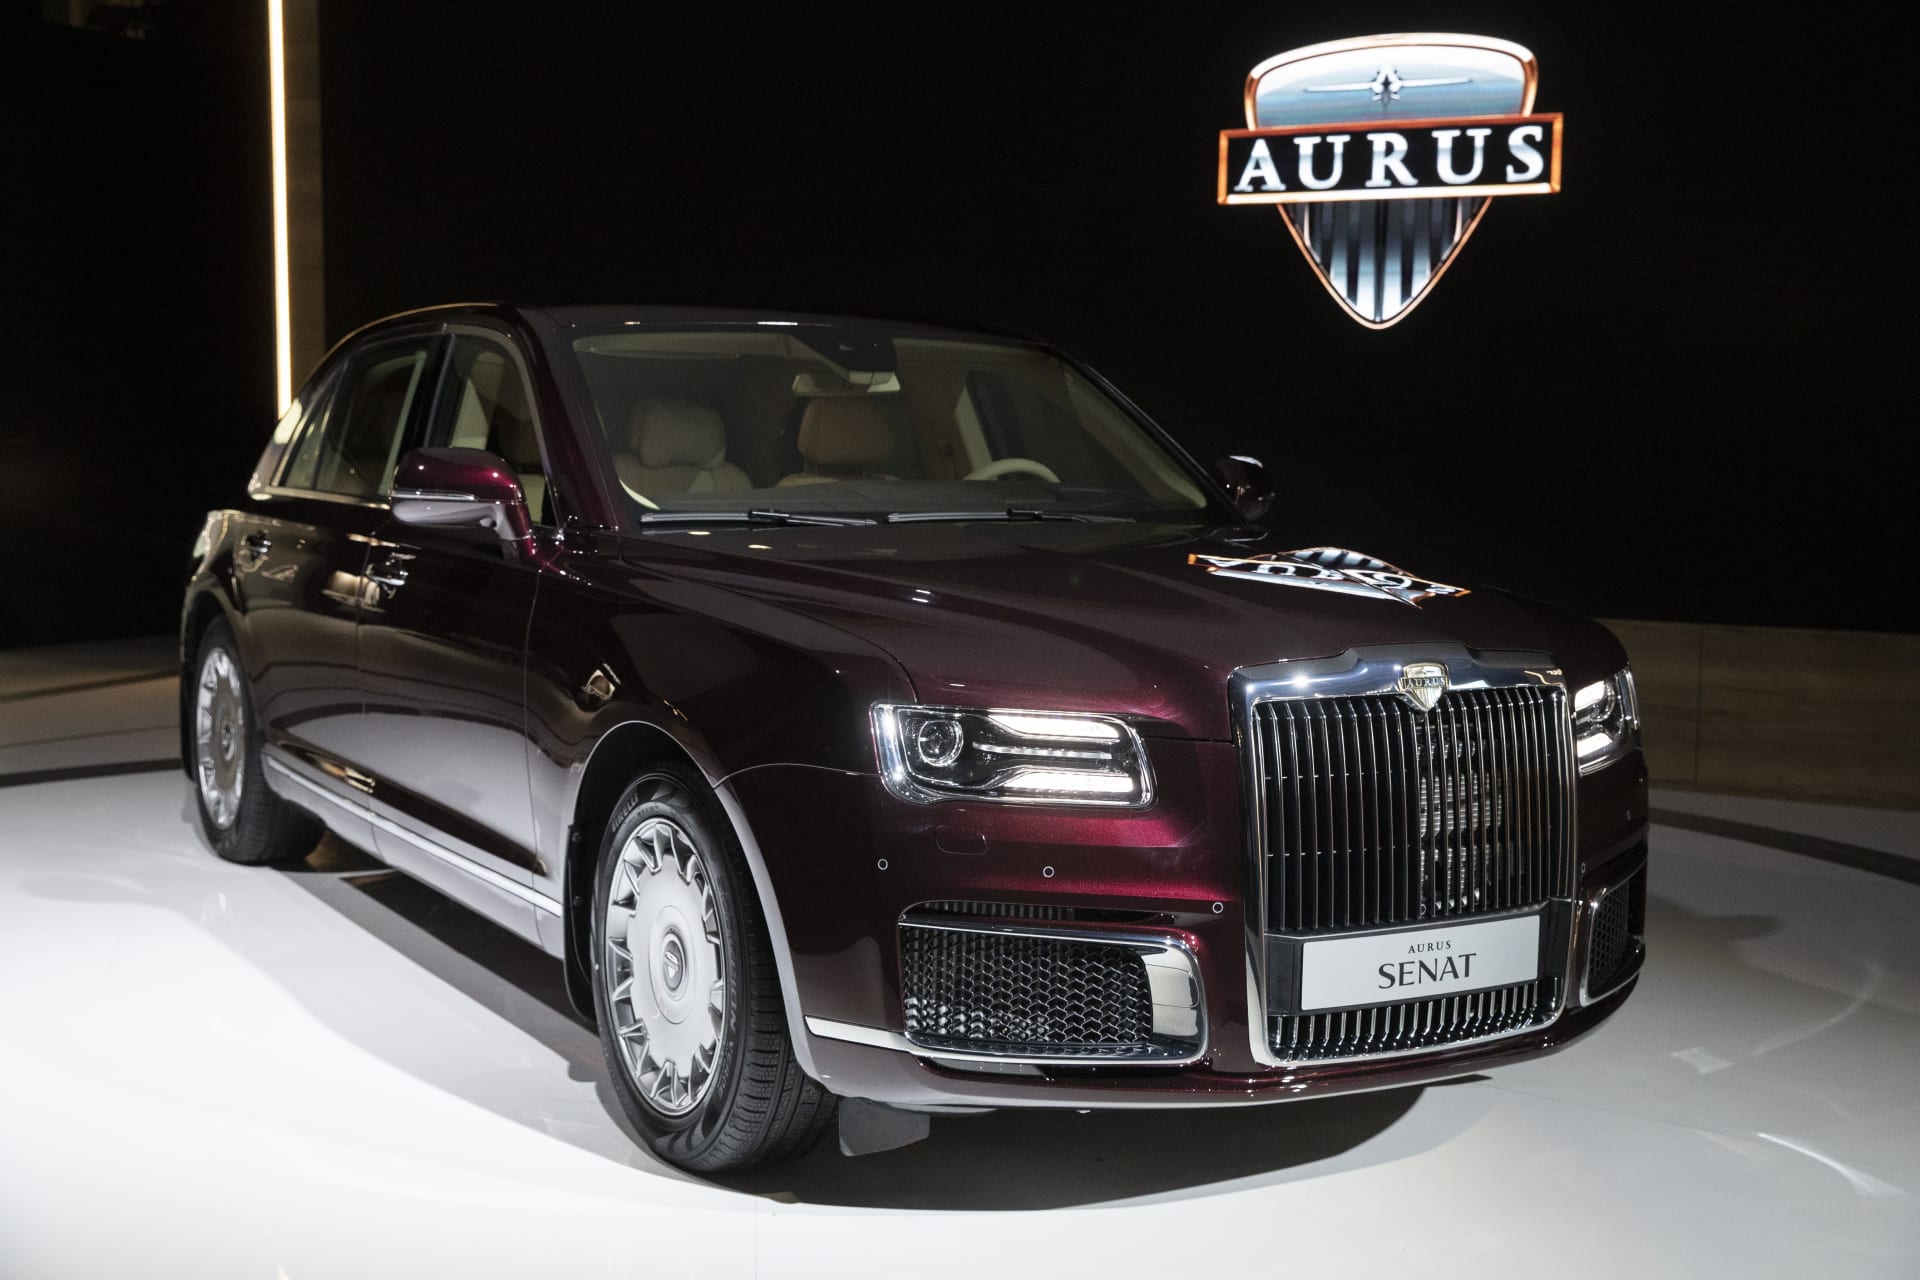 Impulzem k projektu Aurusu Senat byla snaha nahradit západní limuzíny u ruských uživatelů domácím výrobkem.